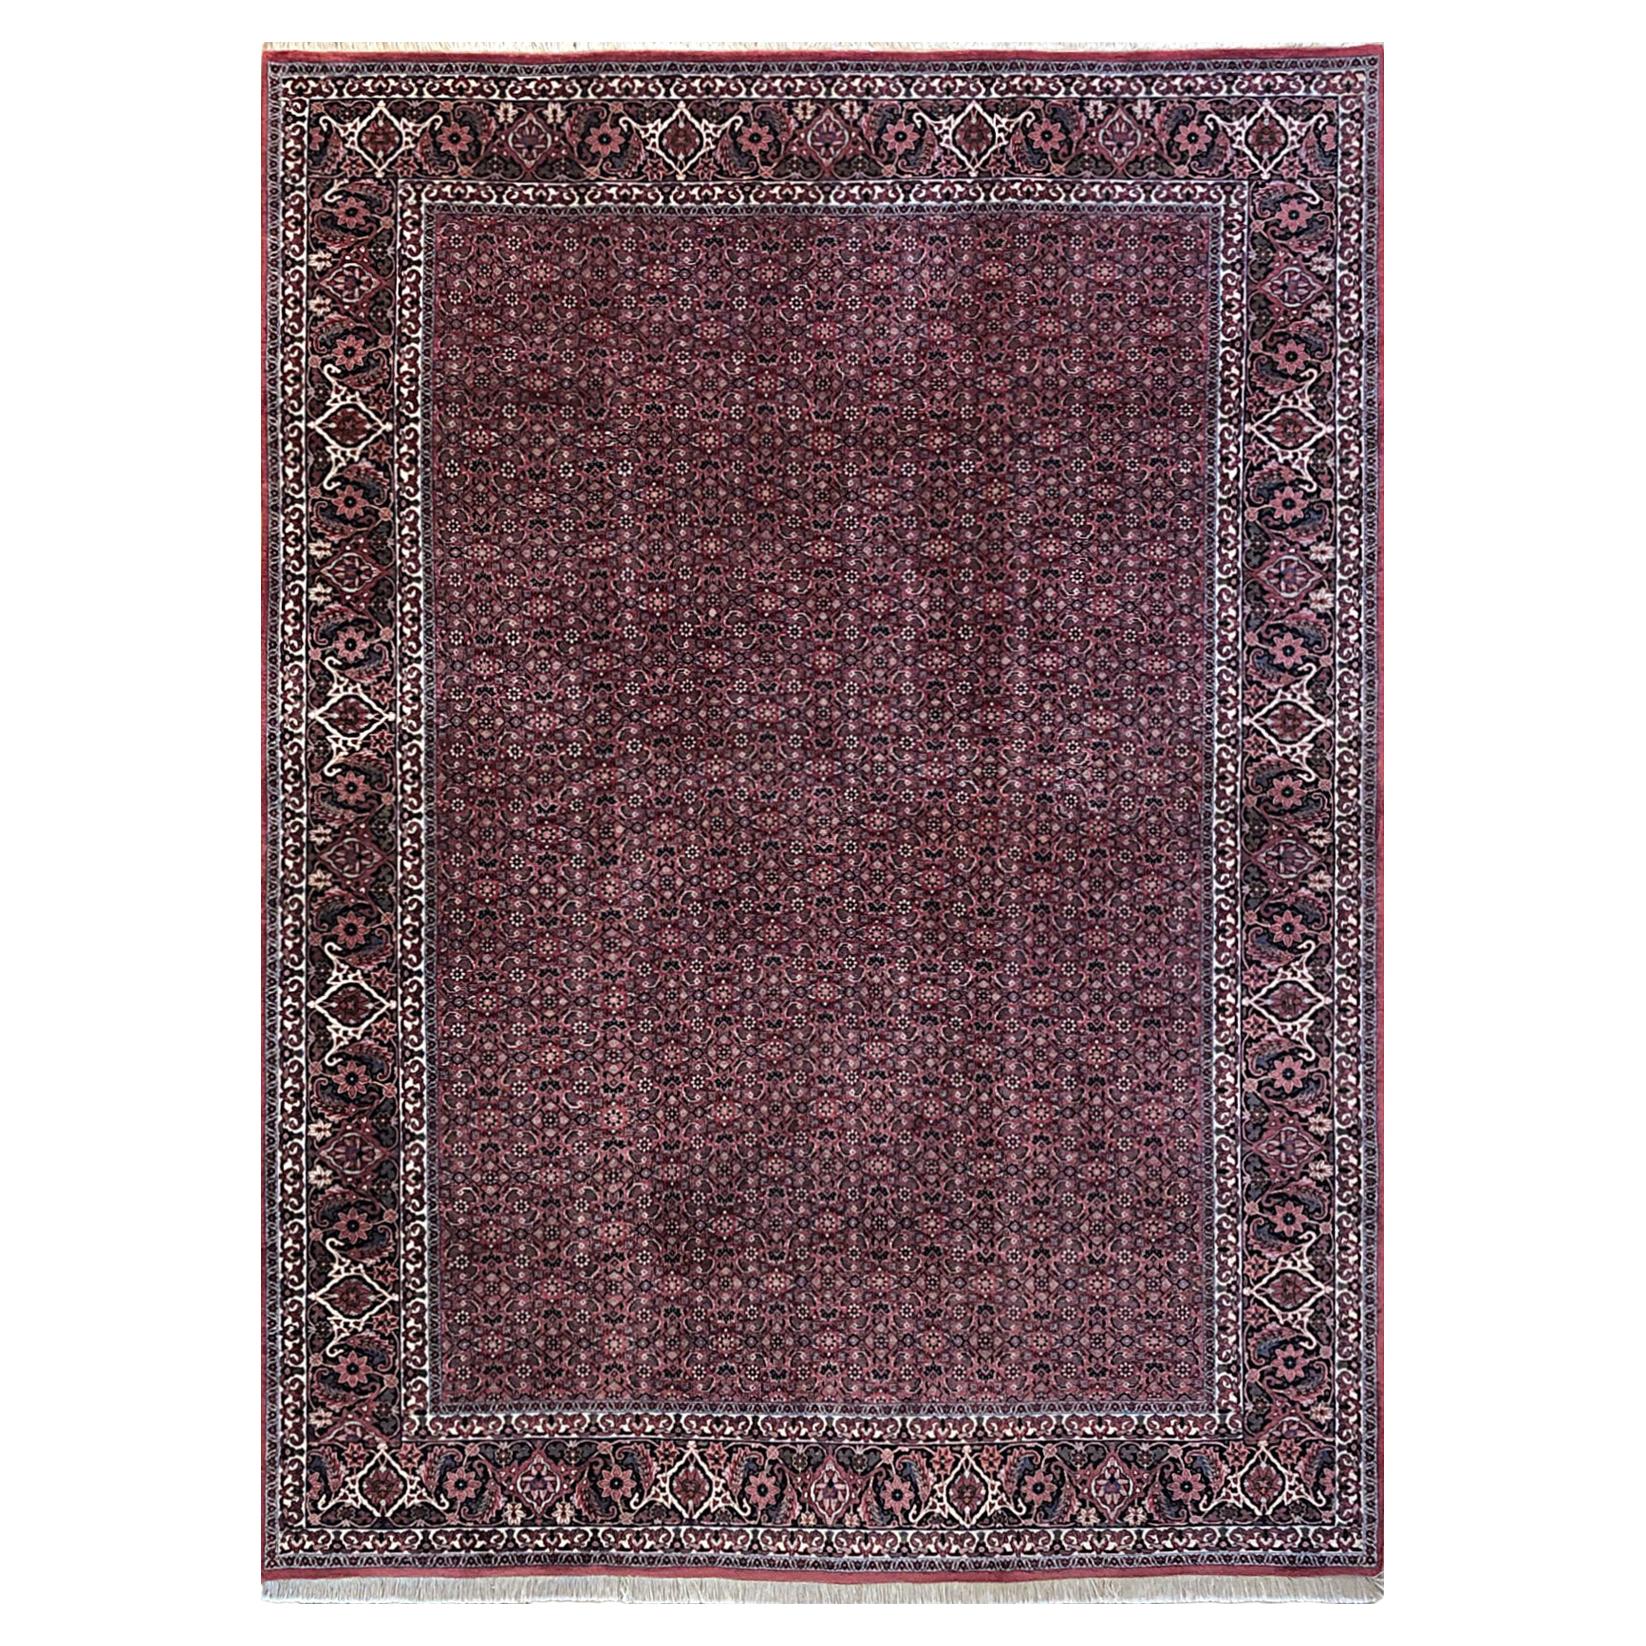 Persischer handgeknüpfter roter Bidjar-Teppich im Herati-Design